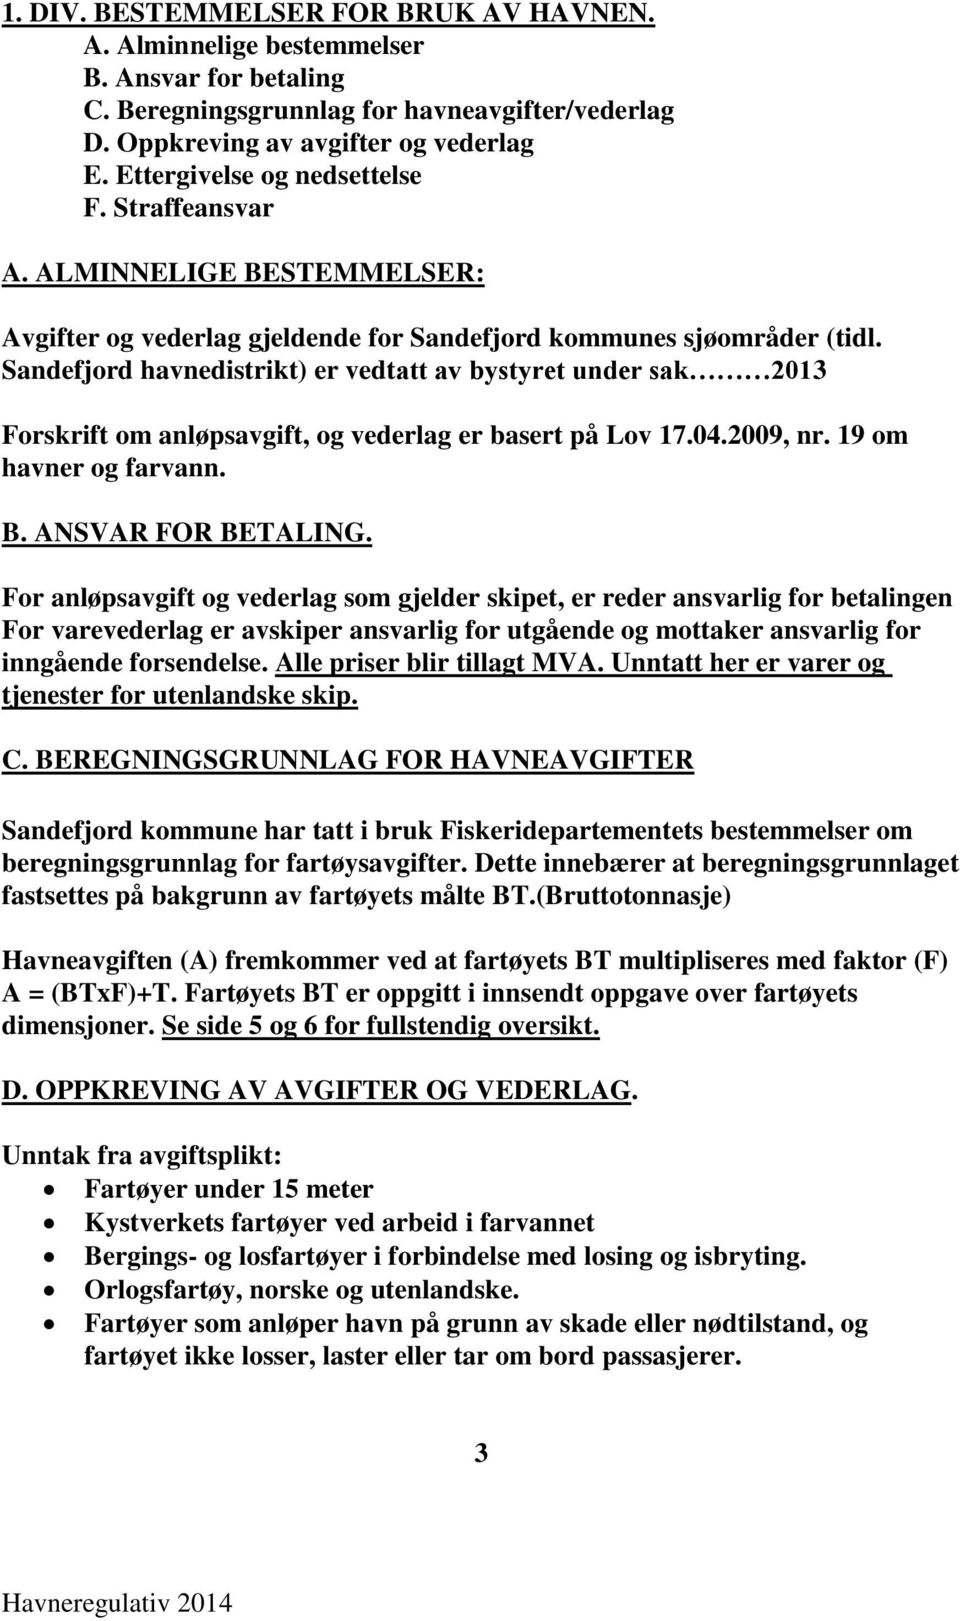 Sandefjord havnedistrikt) er vedtatt av bystyret under sak 2013 Forskrift om anløpsavgift, og vederlag er basert på Lov 17.04.2009, nr. 19 om havner og farvann. B. ANSVAR FOR BETALING.